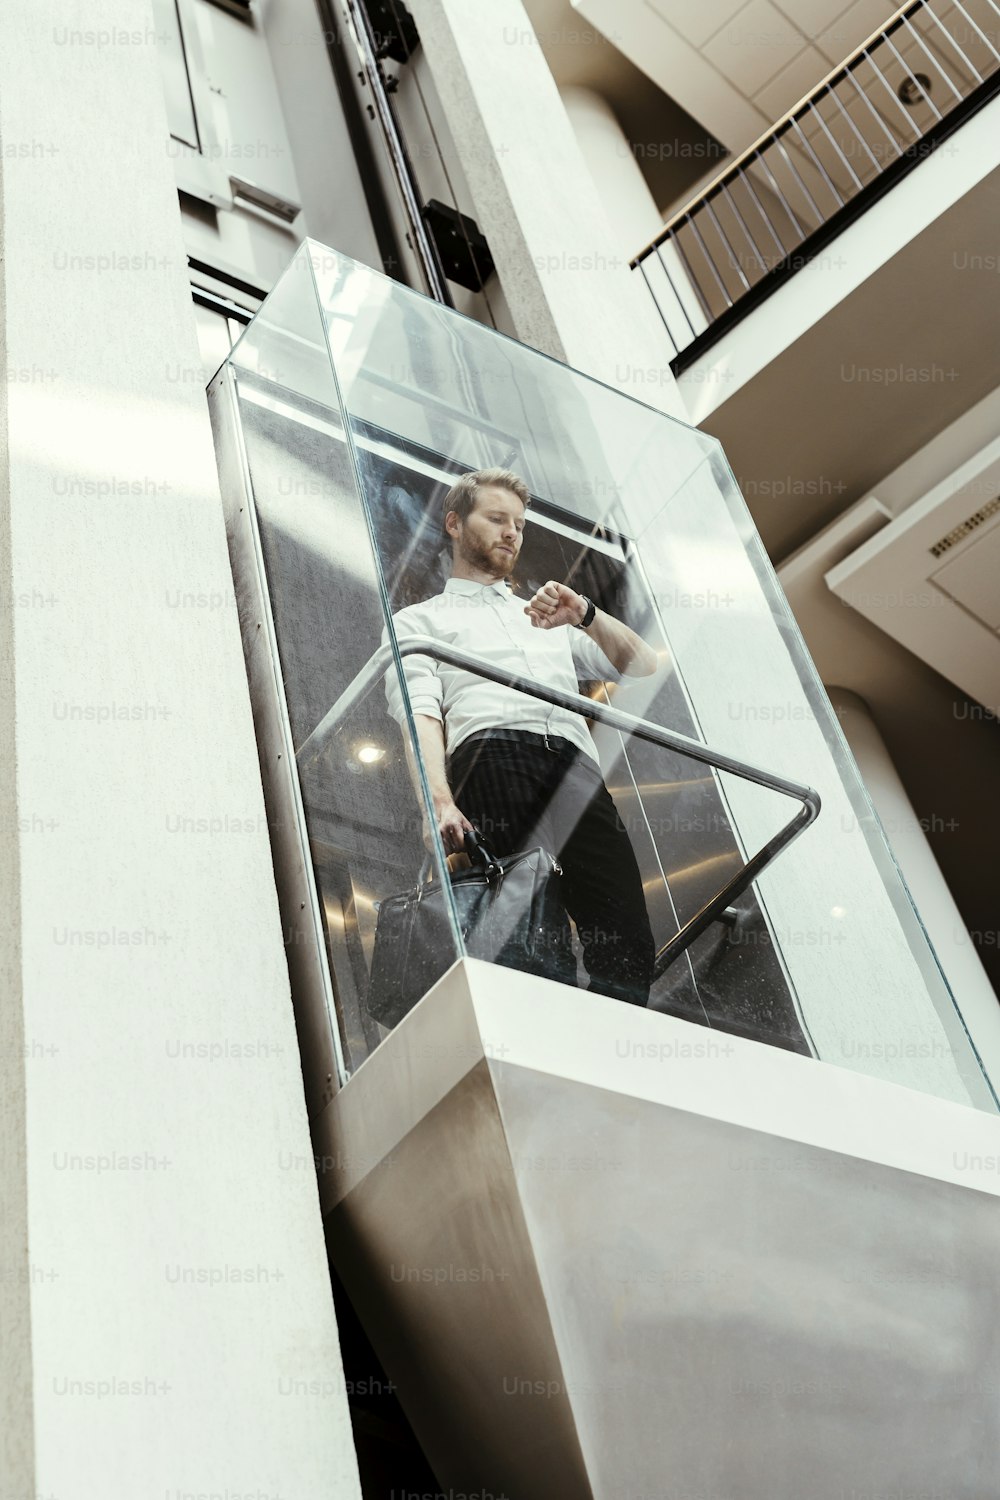 近代的なガラス張りのエレベーターで上層階へ向かうビジネスマン